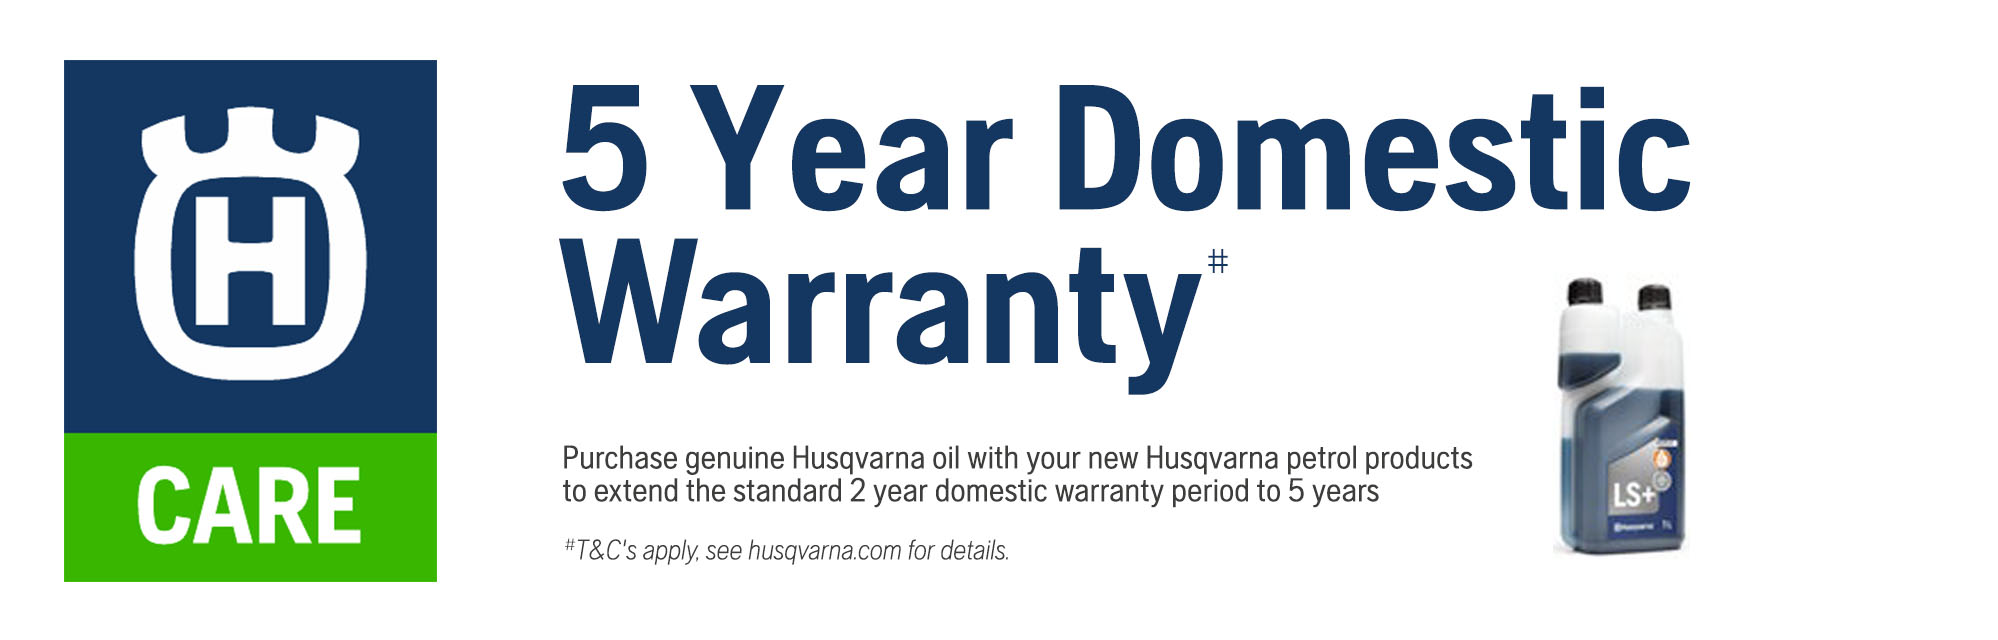 2023 Q2 - 5 Year Domestic Warranty